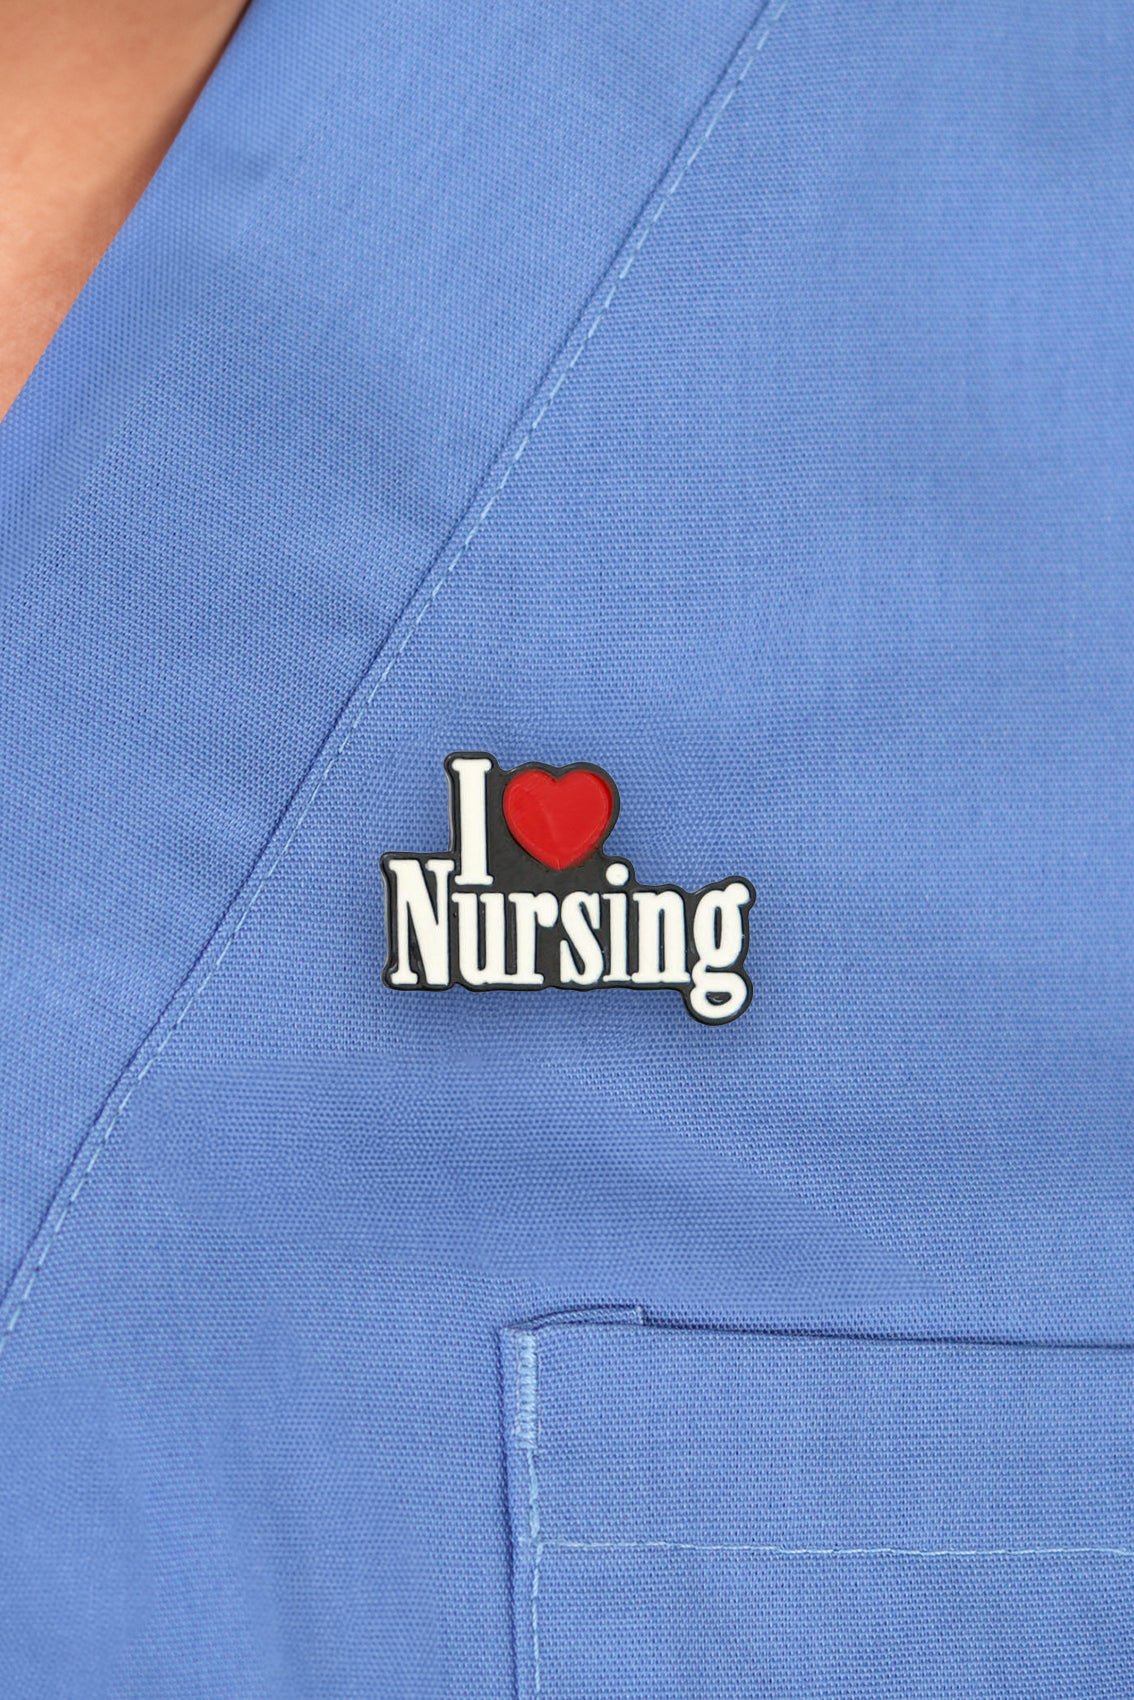 I Love Nursing Pin